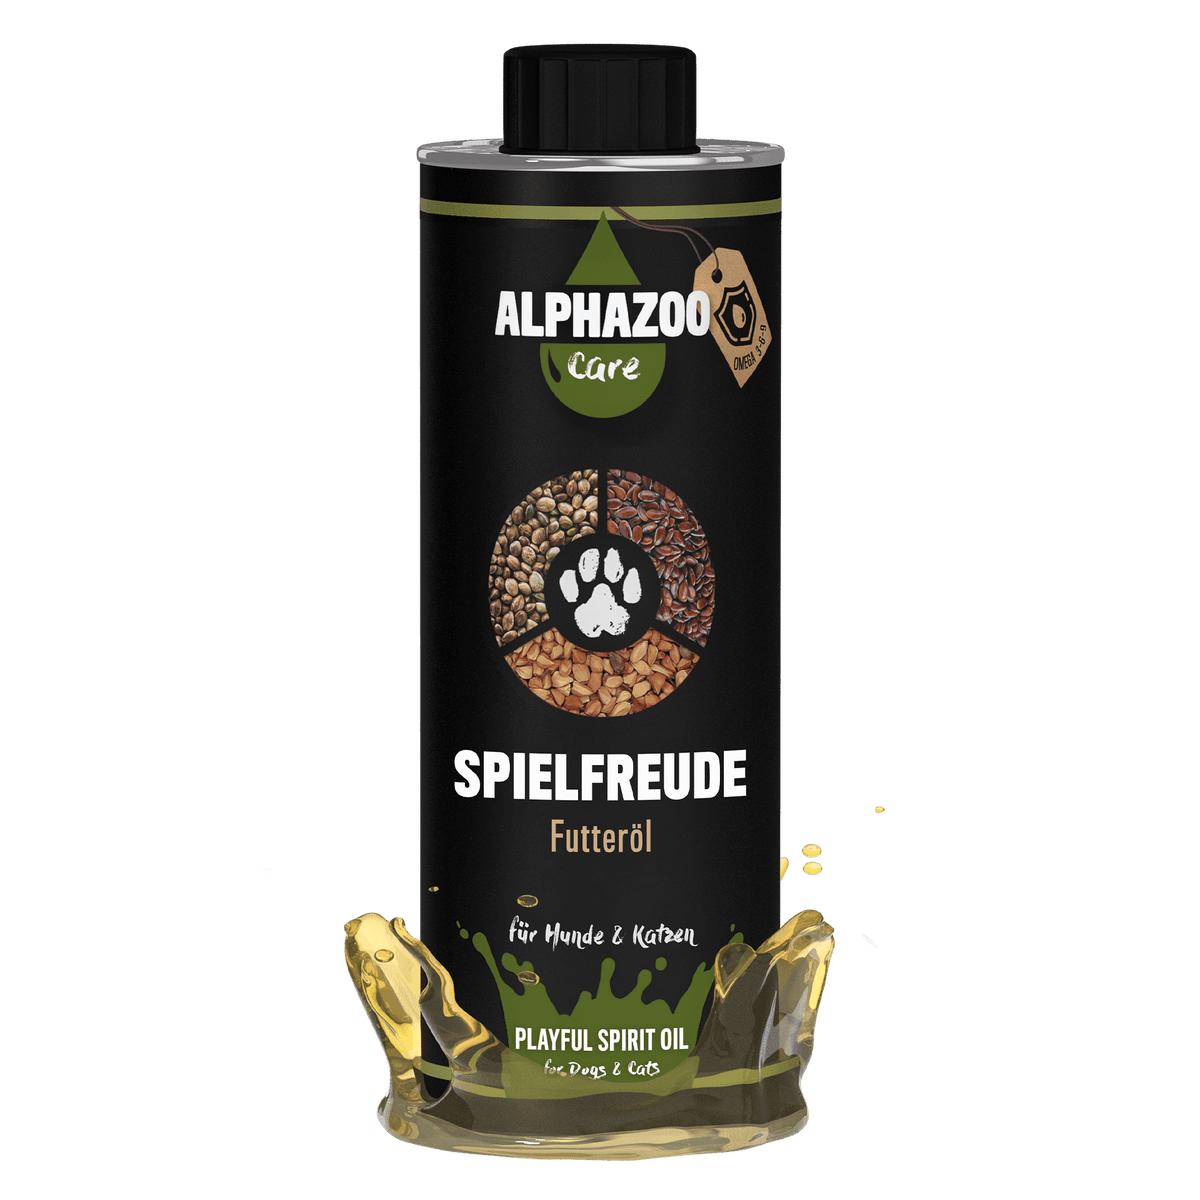 ALPHAZOO Spielfreude Futteröl 500ml für Hunde und Katzen I Öl für Agility und Bewegung